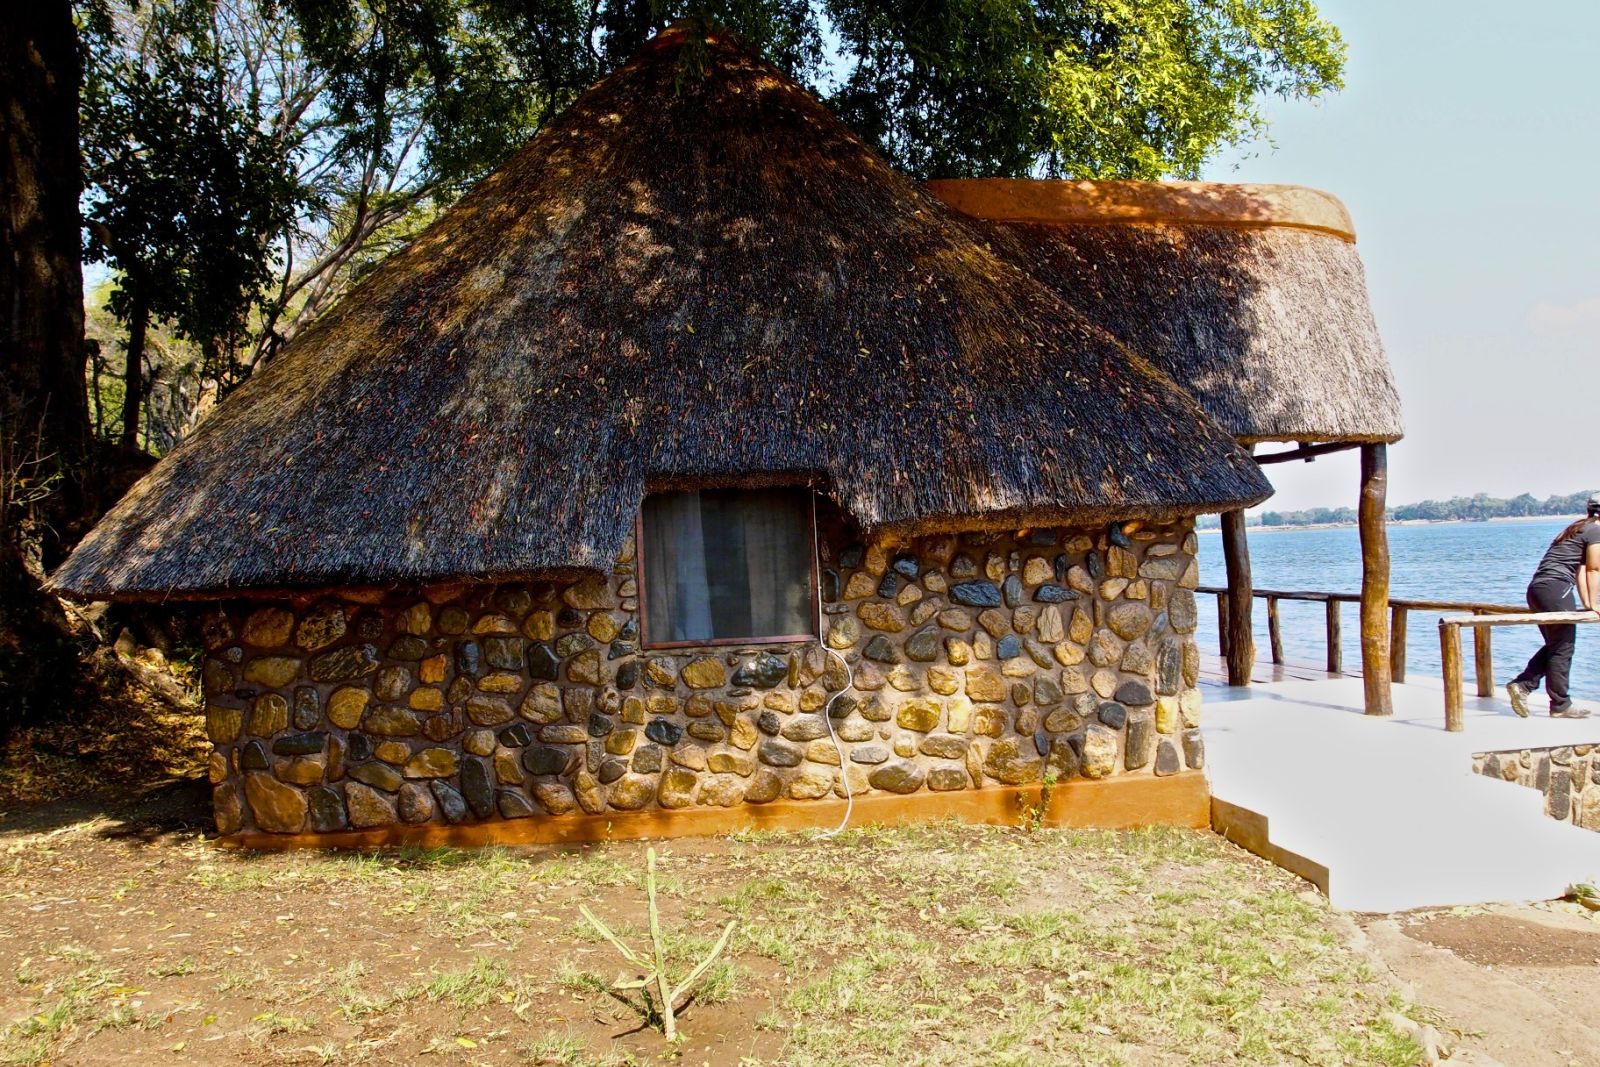 Lower Zambezi Lodge